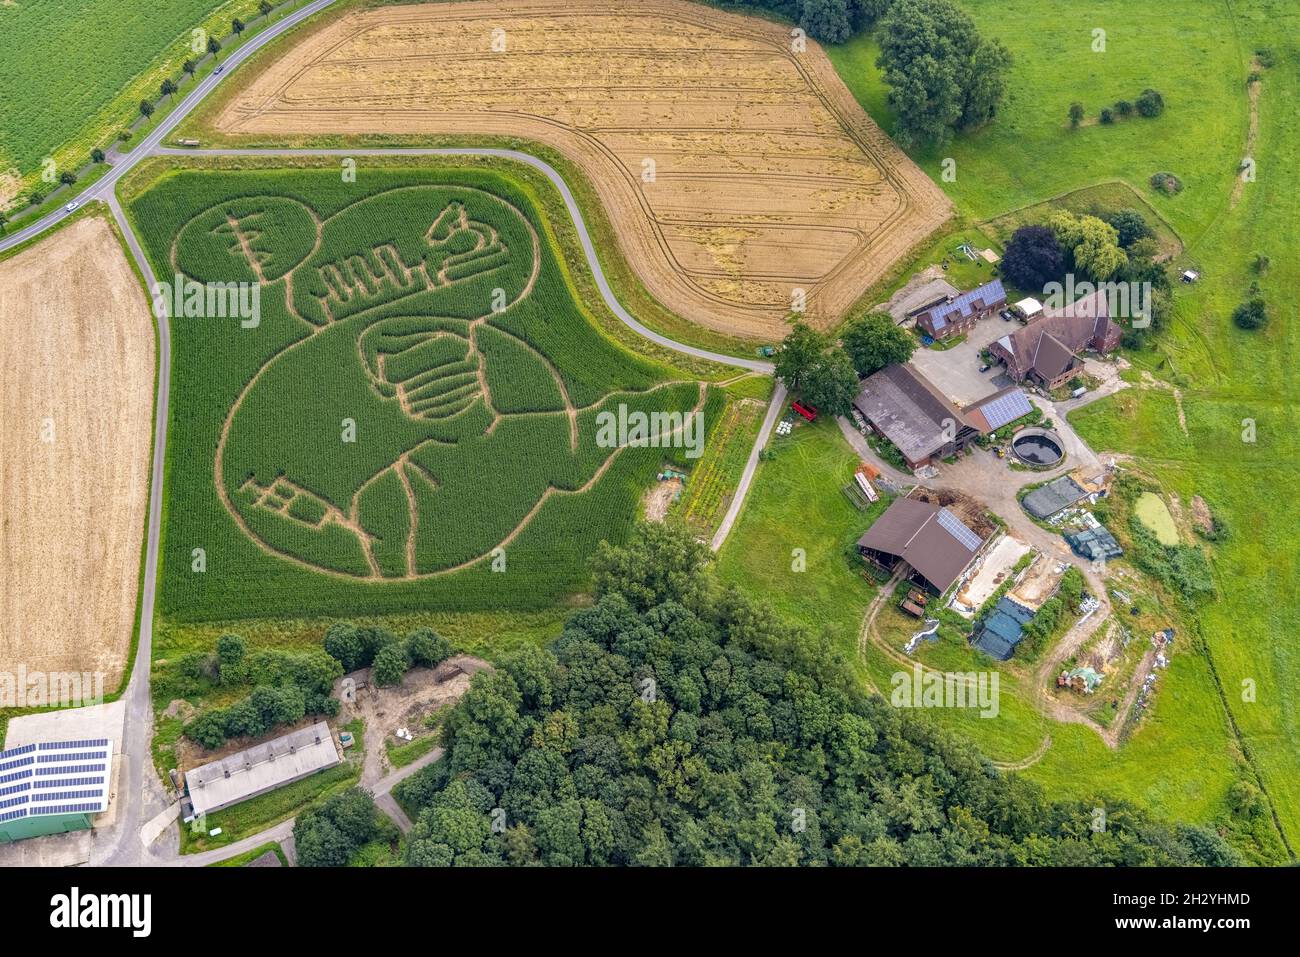 Benedikt Lünemann zaubert jedes Jahr ein Maislabyrinth auf seinem Feld. Meist sind die Motive gesellschaftskritisch oder politisch. Dieses Jahr ist es eine Person wi Stockfoto